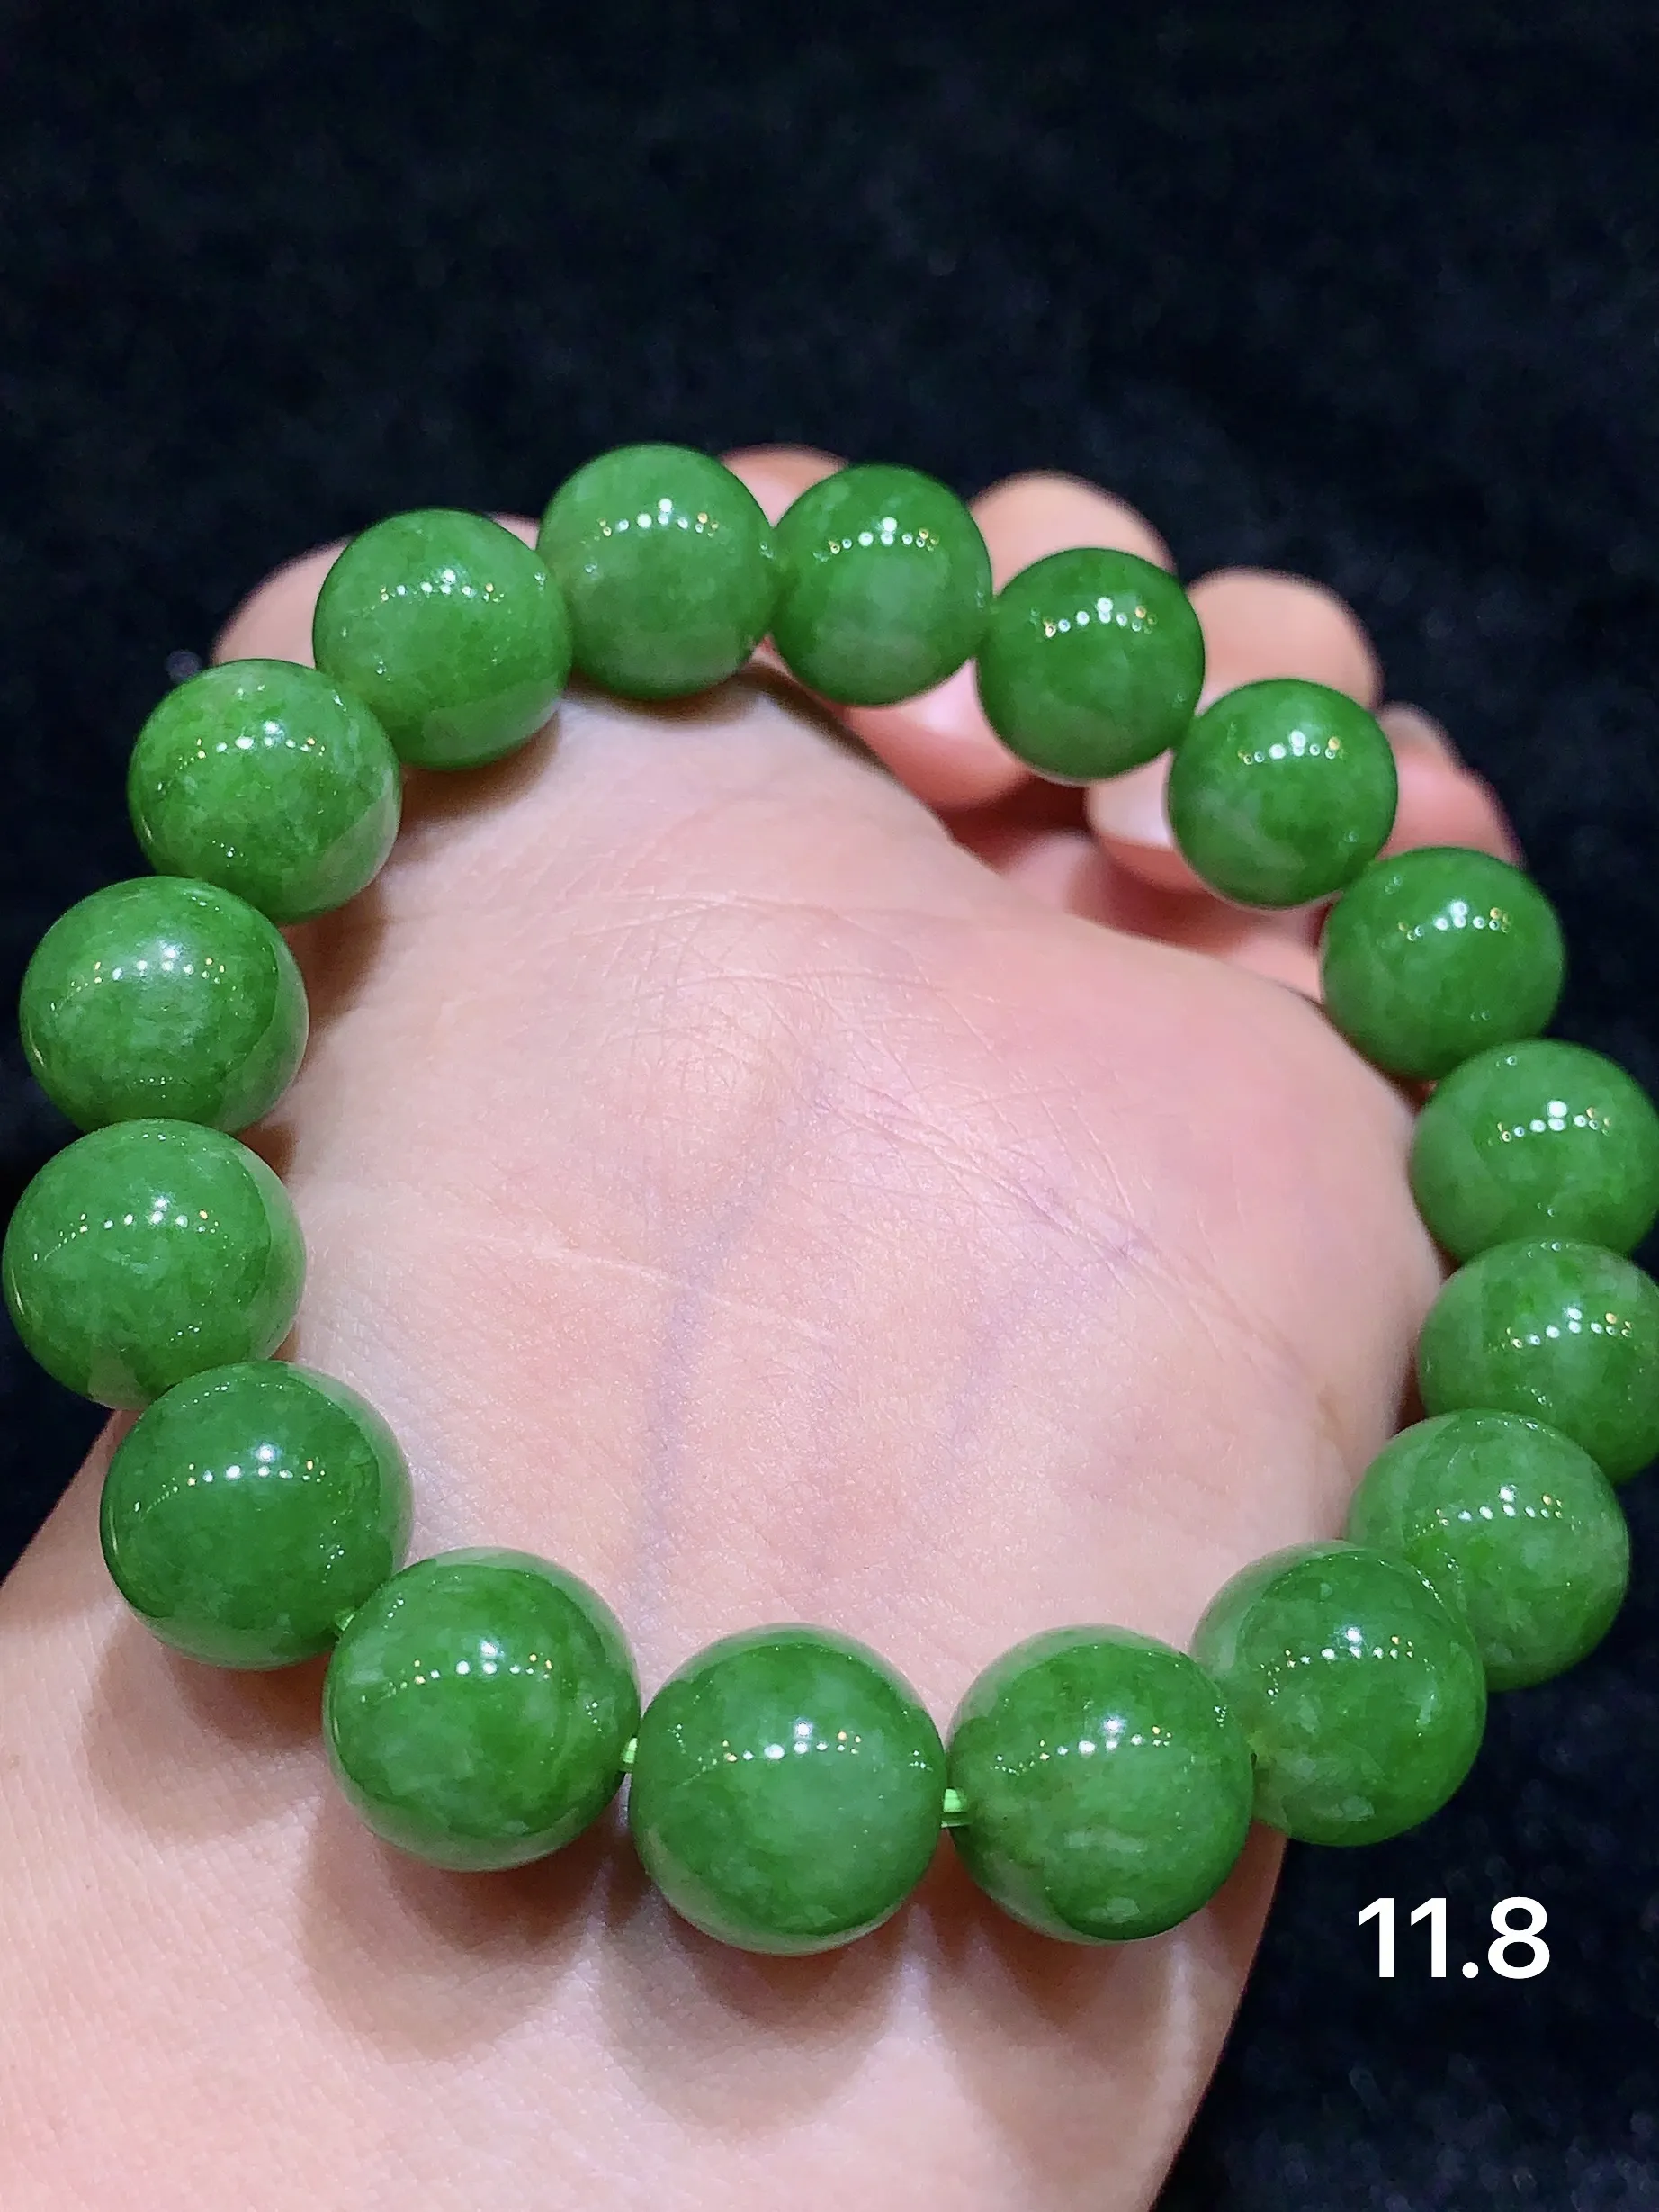 满绿圆珠手串 玉质细腻水润 色泽艳丽 款式新颖时尚唯美 取一尺寸11.8